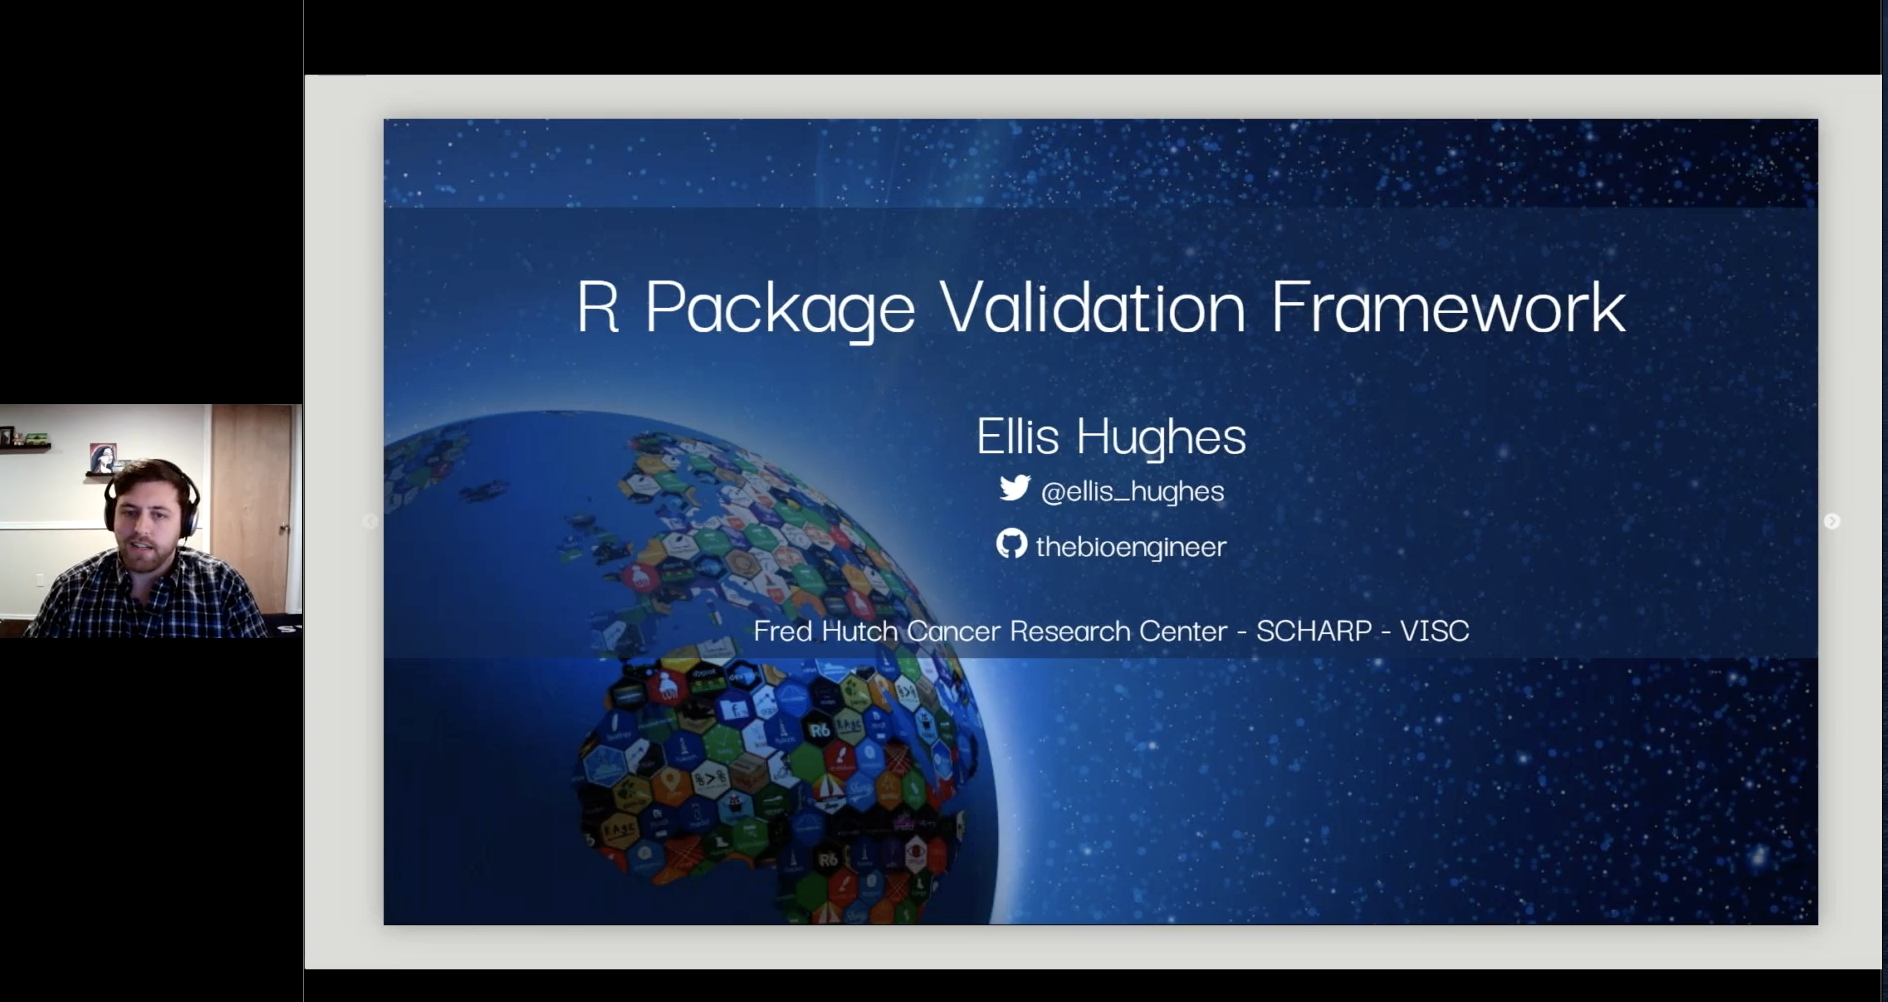 R Package Validation Framework Conference Talk